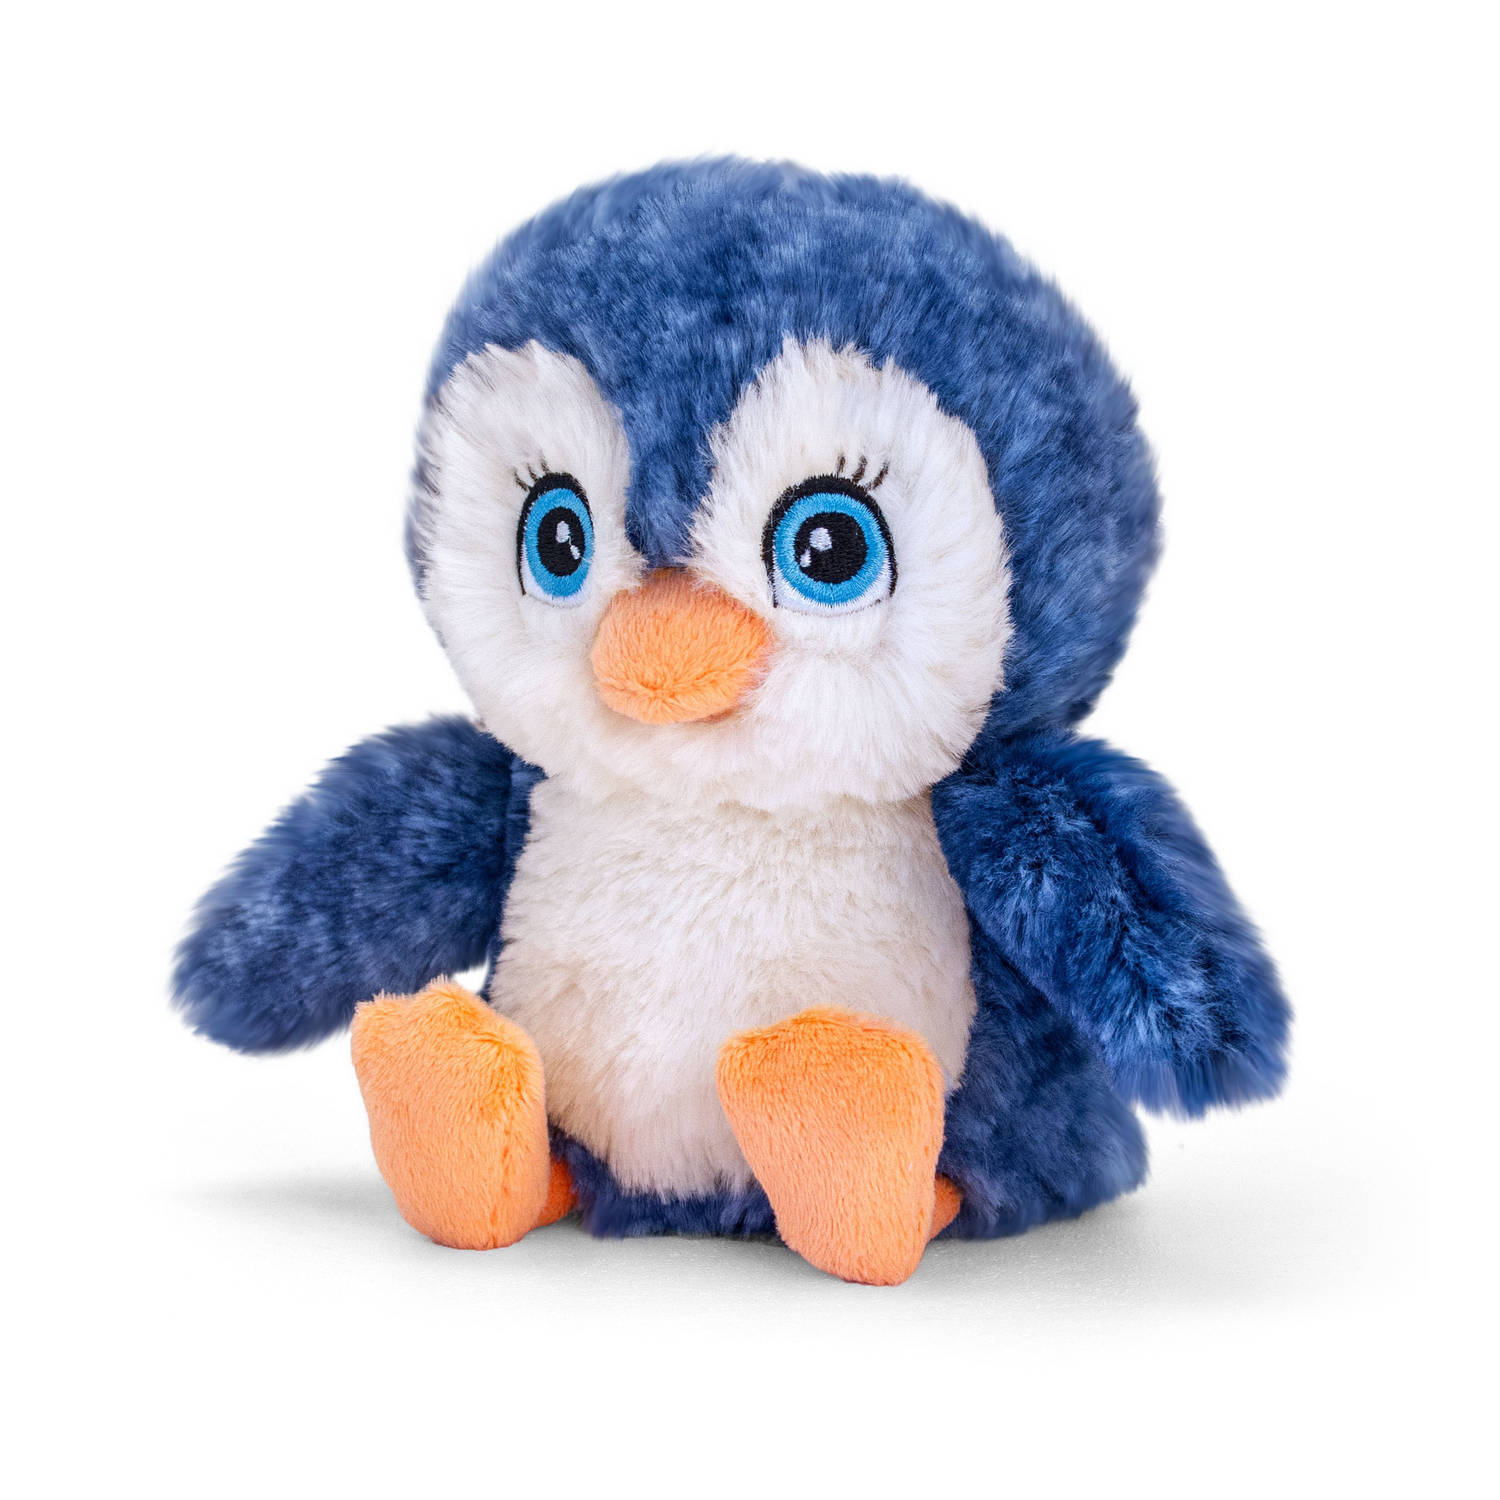 Pluche knuffel dieren pinguin 16 cm - Knuffelbeesten speelgoed